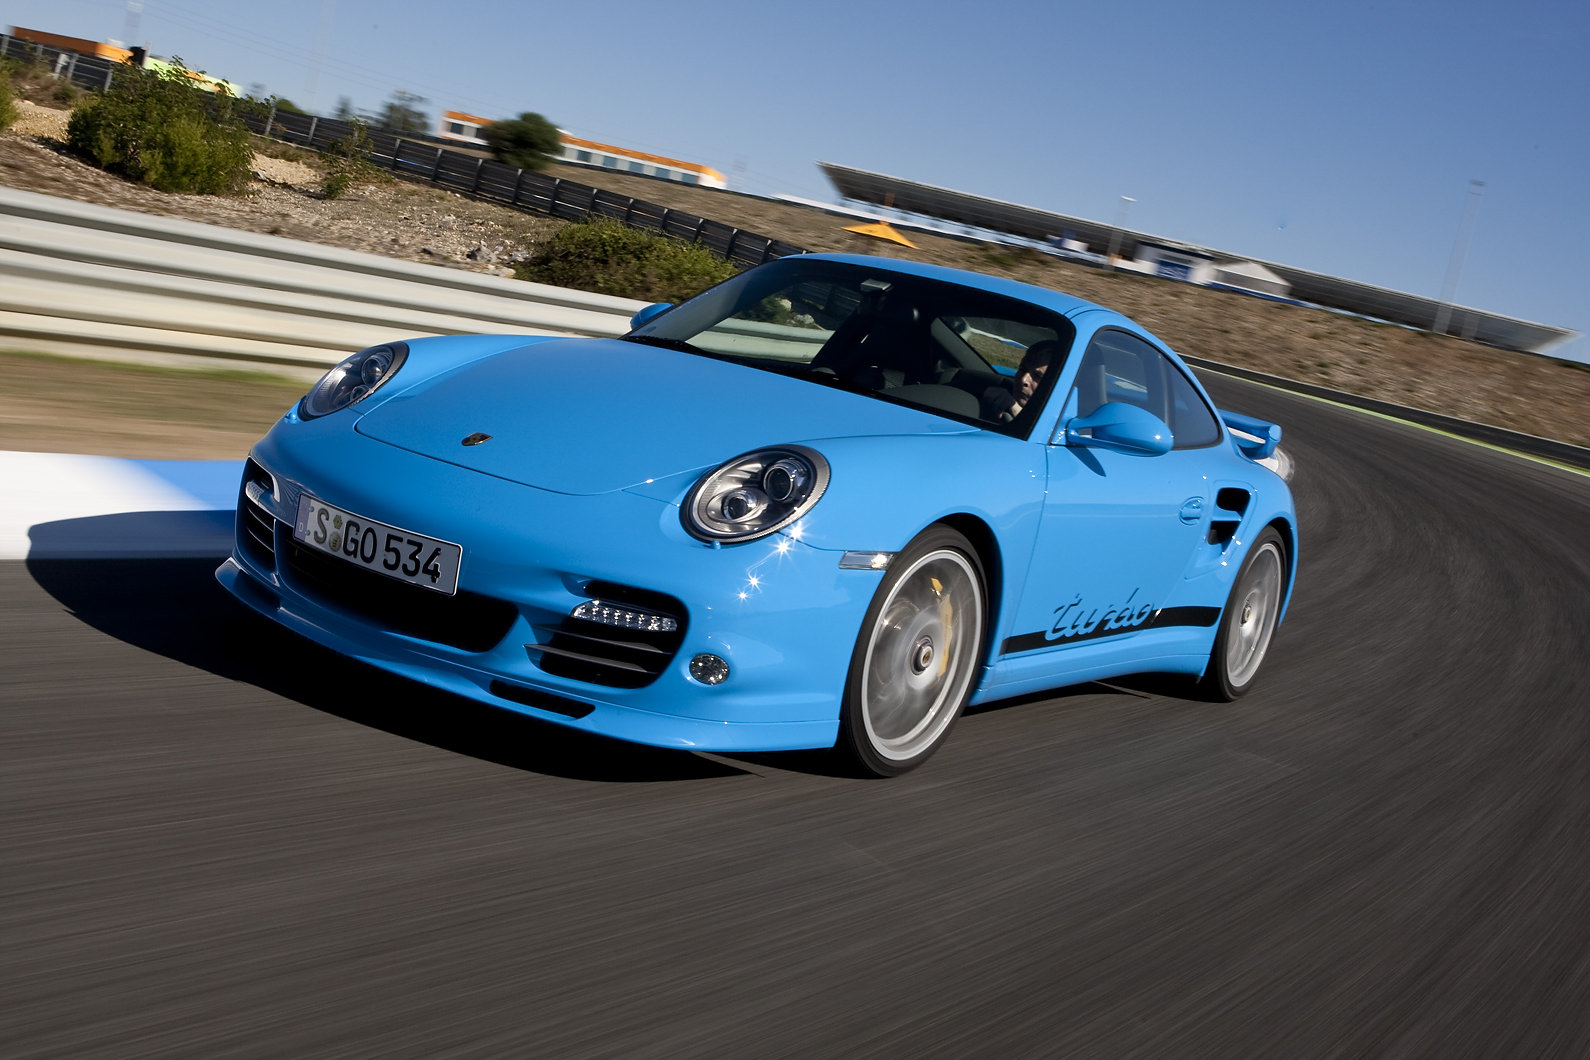 Porsche 911 3.8